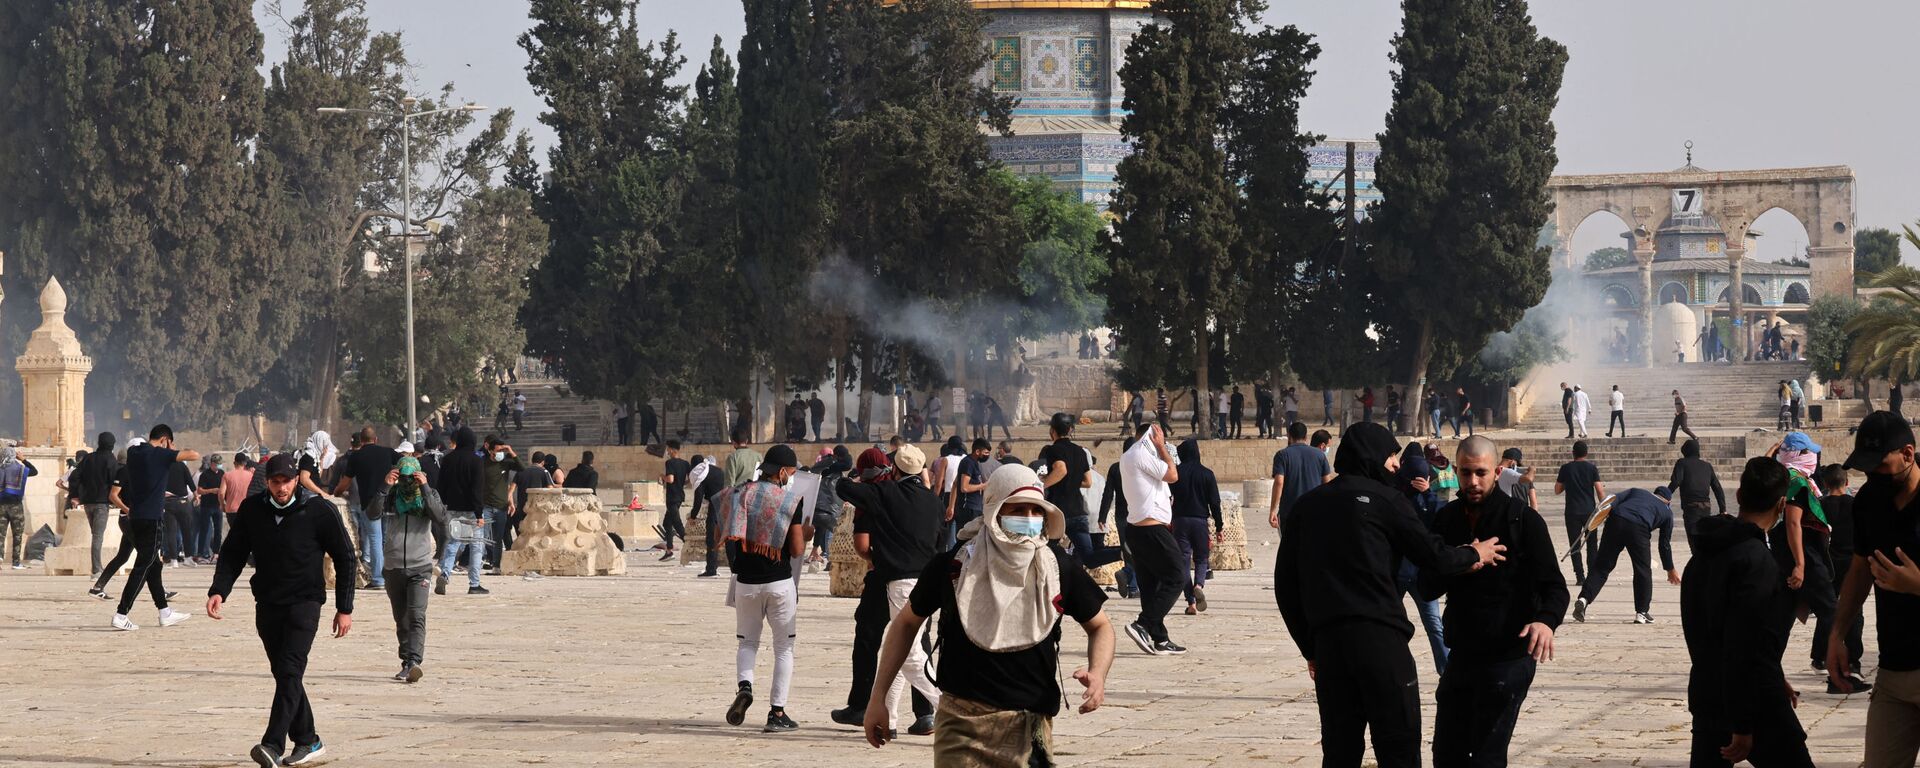 Столкновения палестинцев с израильскими силами безопасности у мечети Аль-Акса в Старом городе (10 мая 2021). Иерусалим - Sputnik Արմենիա, 1920, 17.05.2021